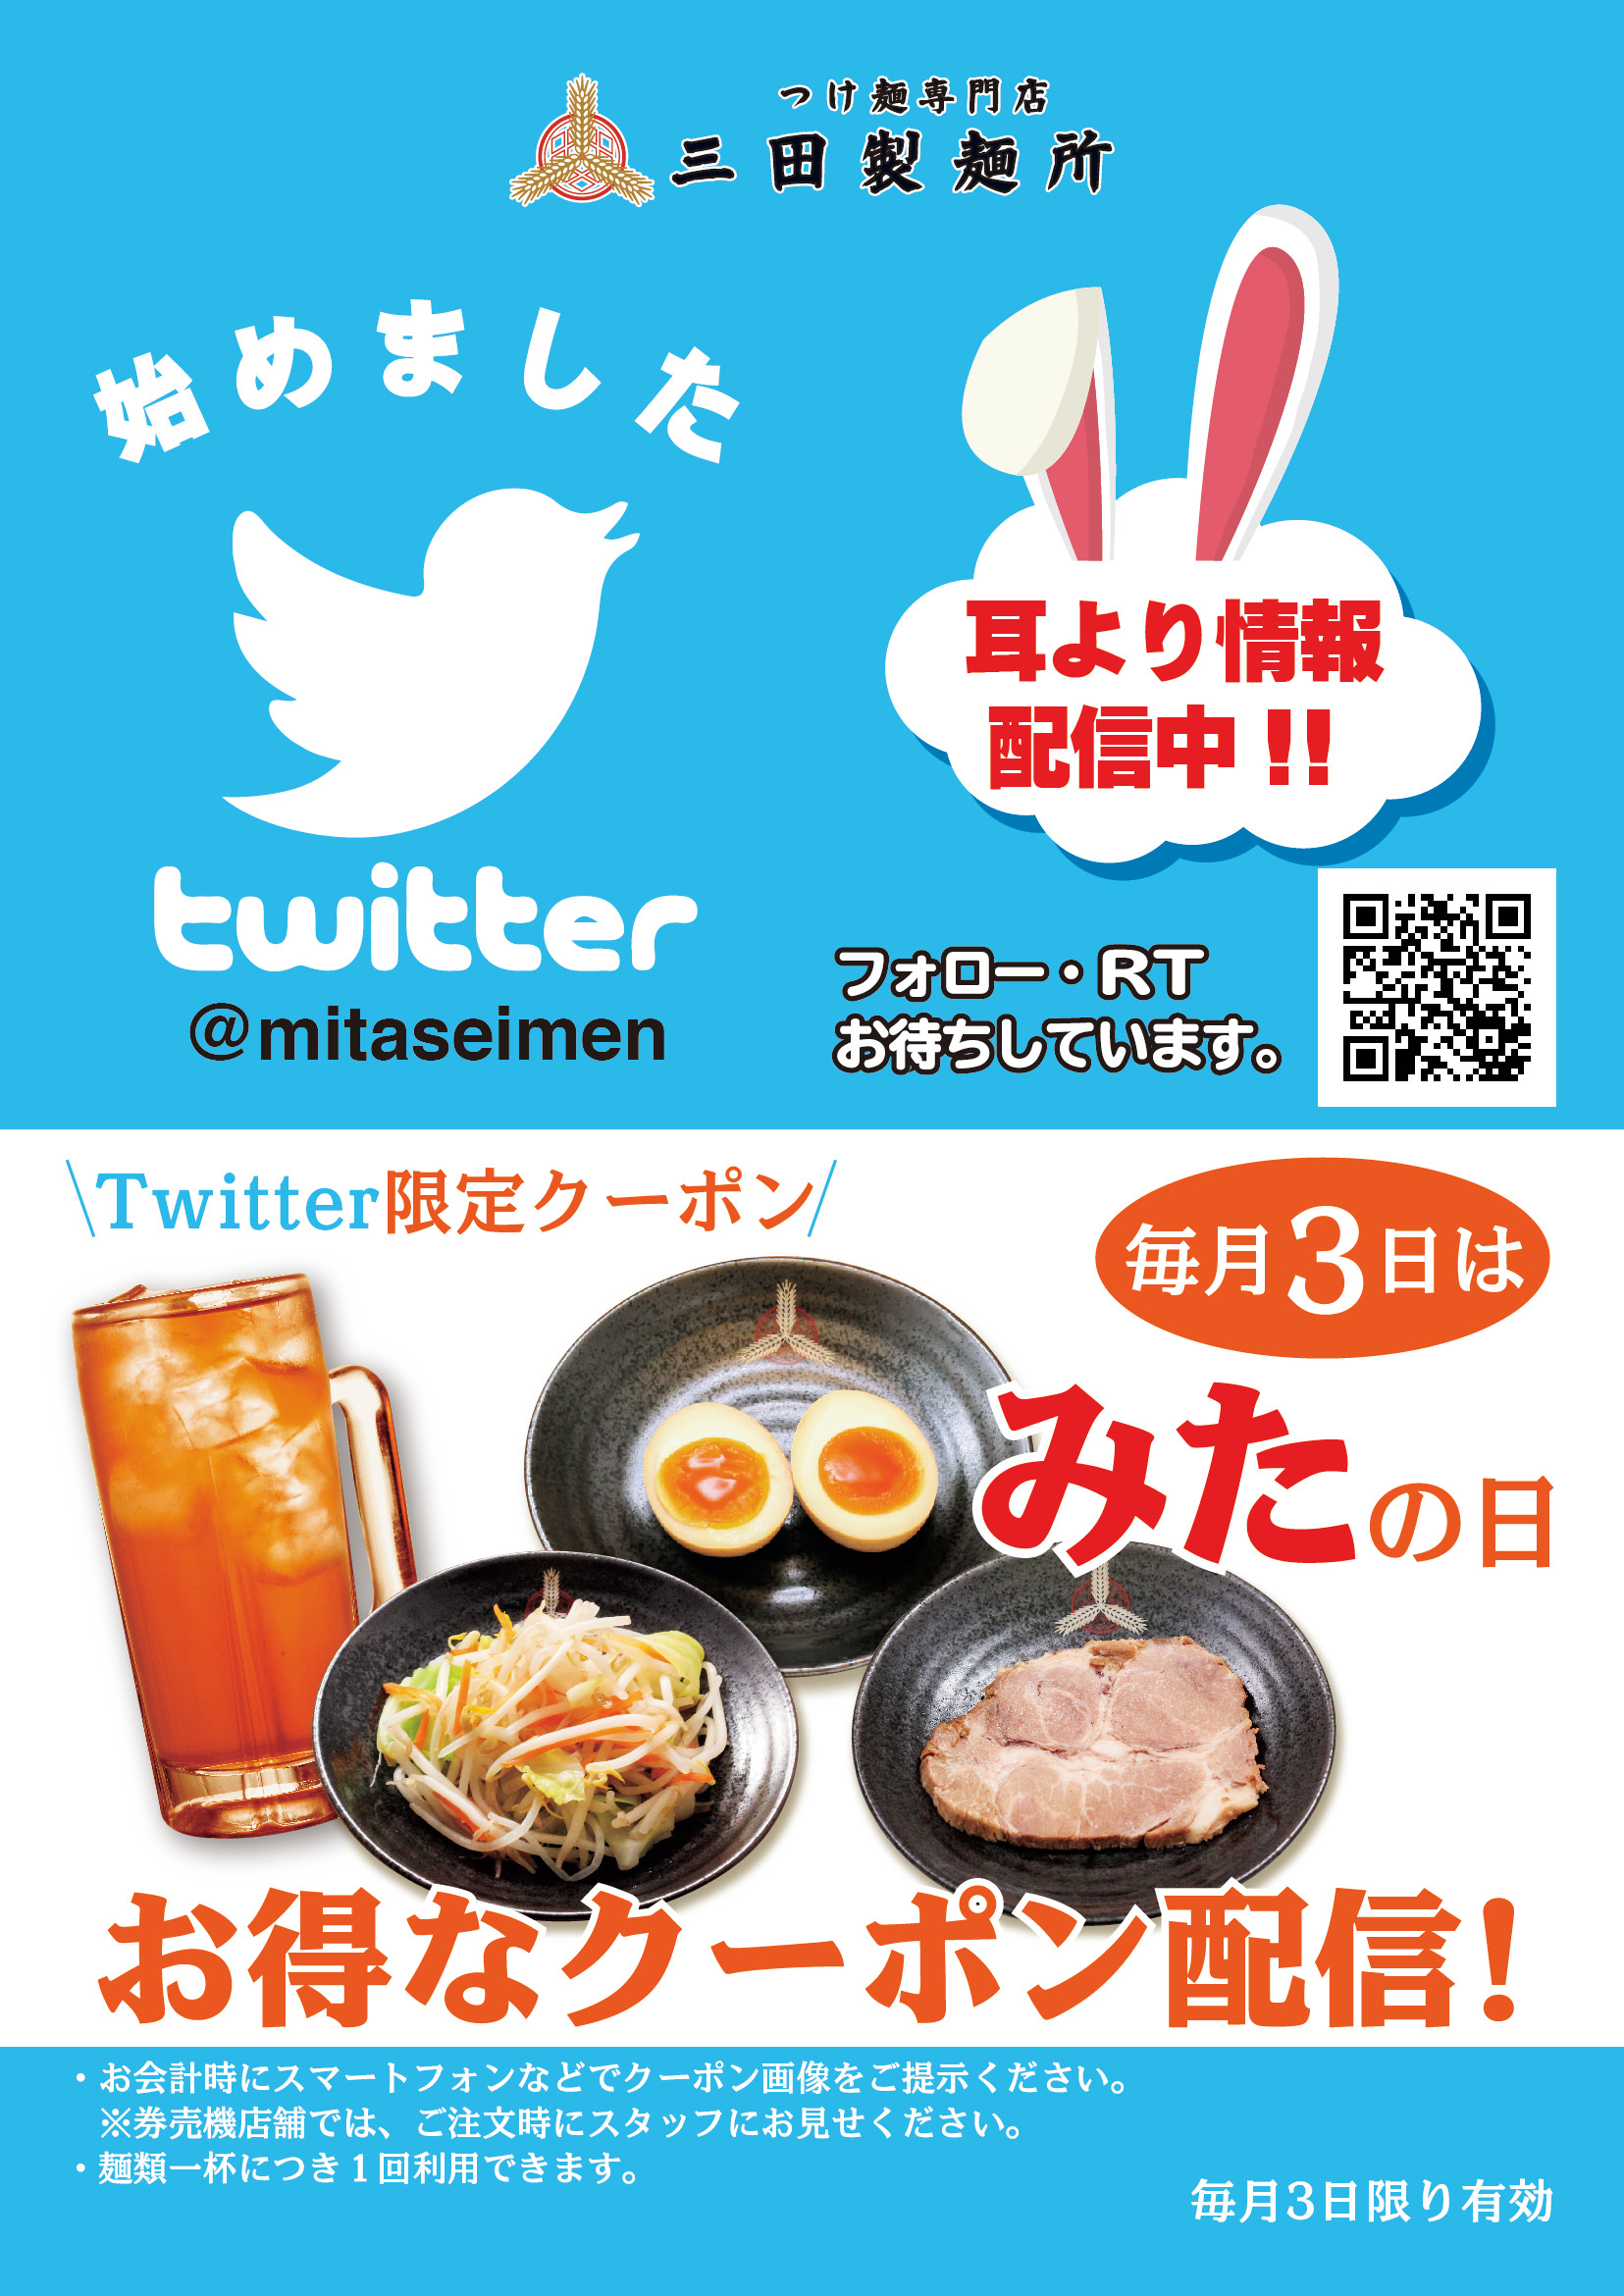 リンツ、春休みに親子で楽しむエッグハントイベントを
3月30日、東京ドームシティ ラクーアで初開催！